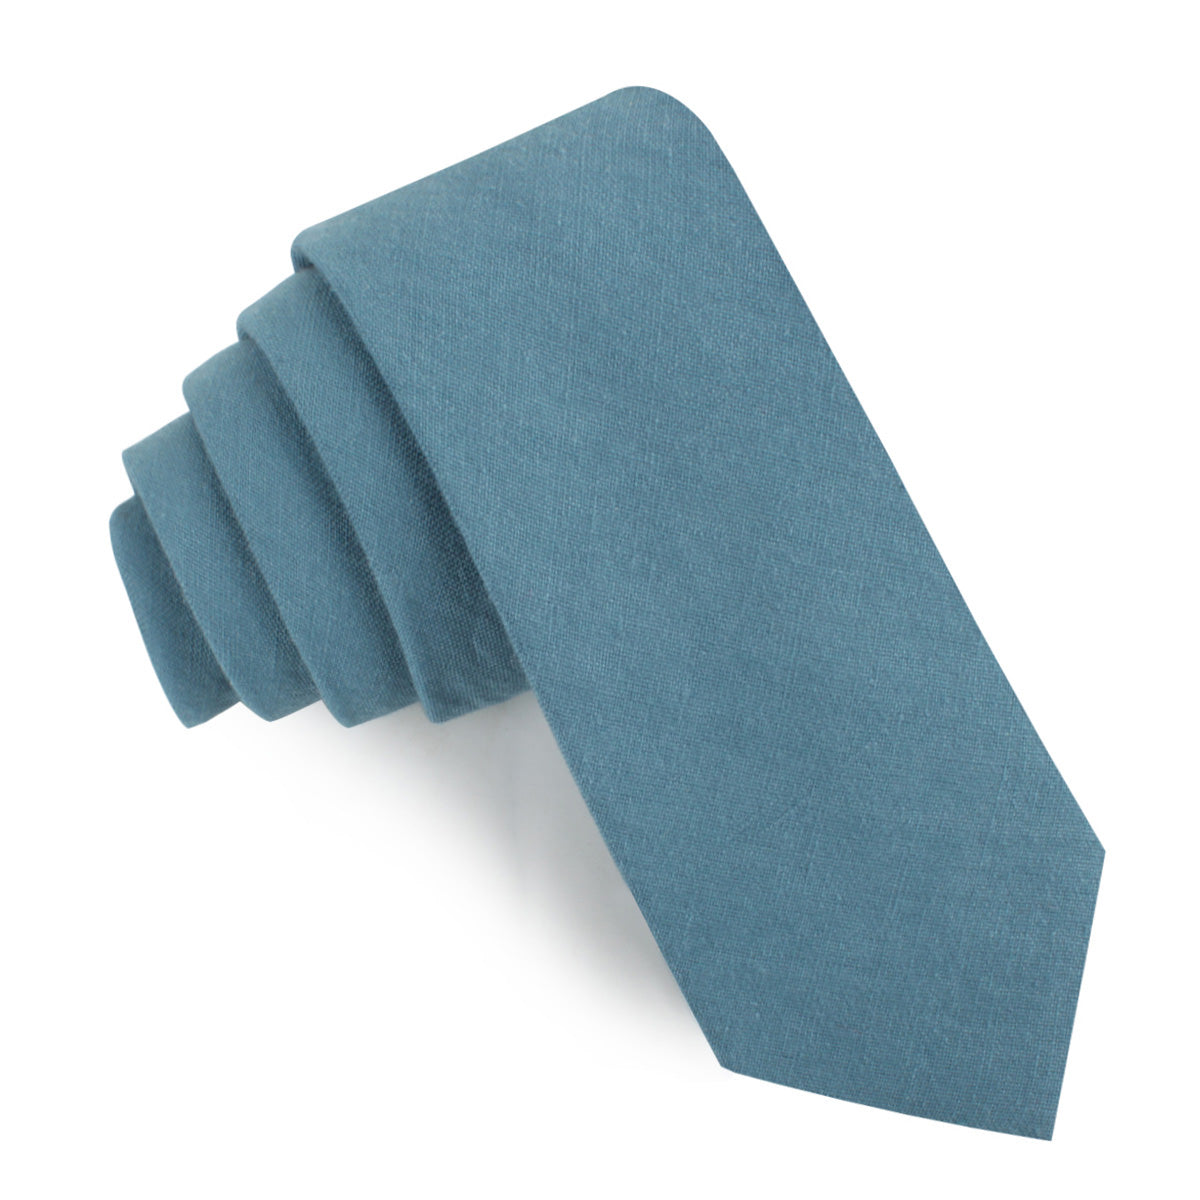 Dusty Teal Blue Linen Skinny Tie